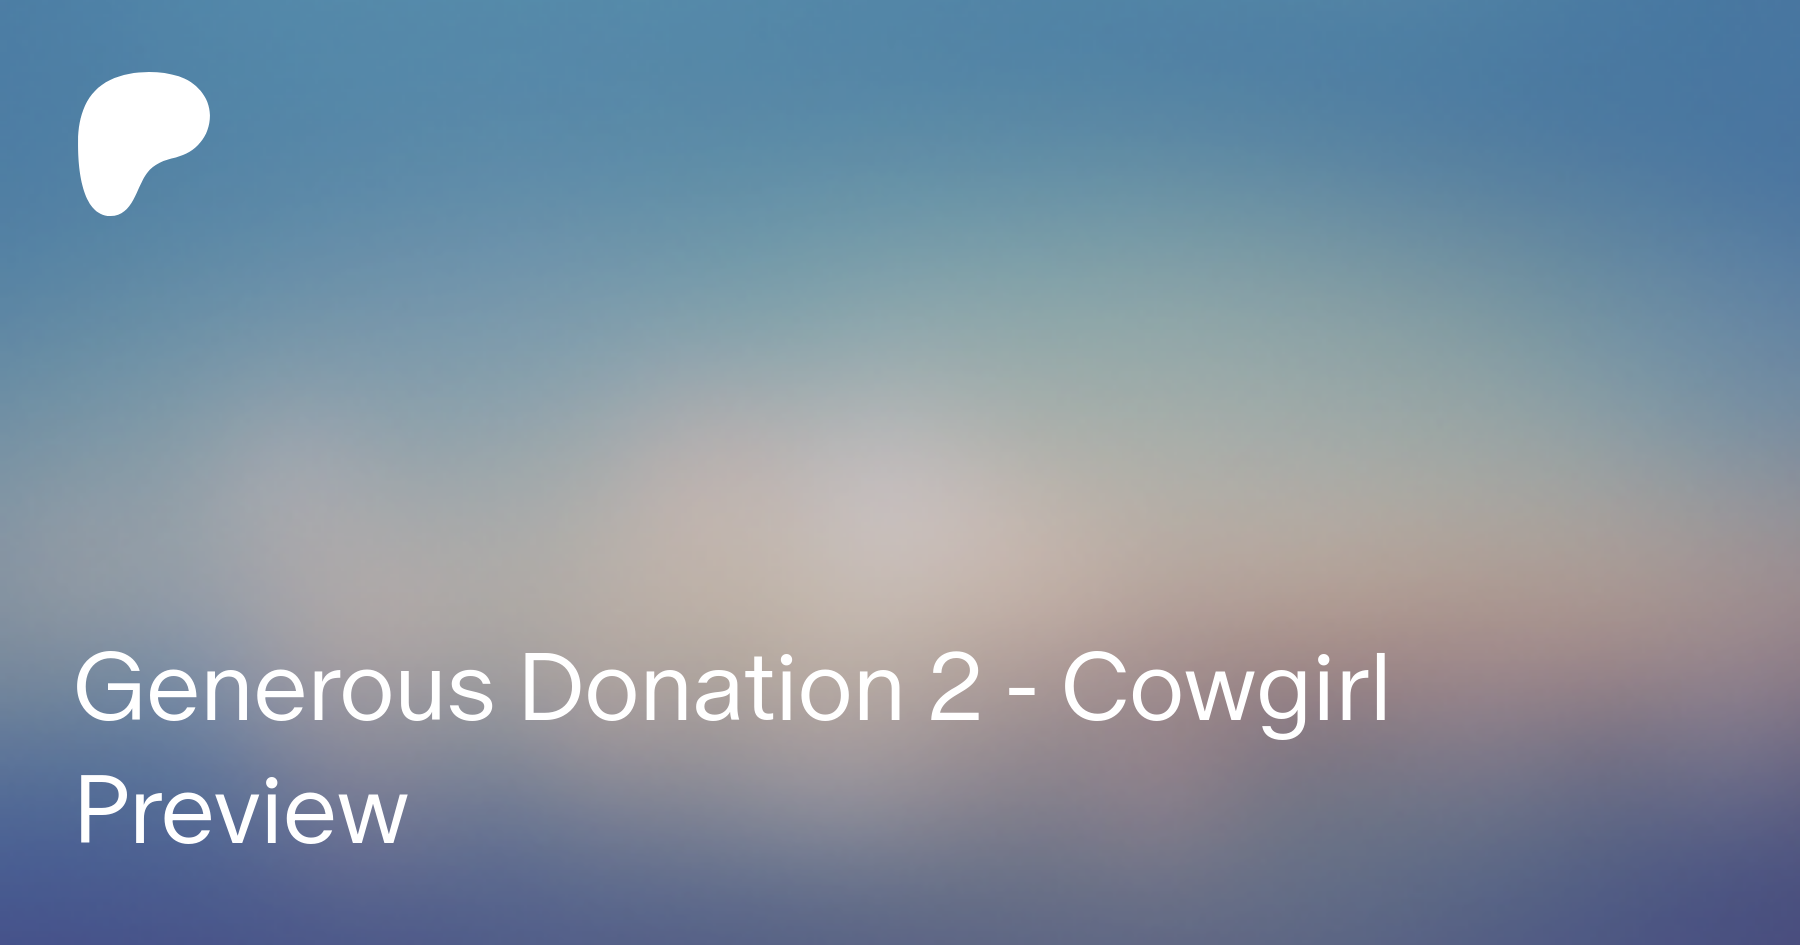 Generous donation 2